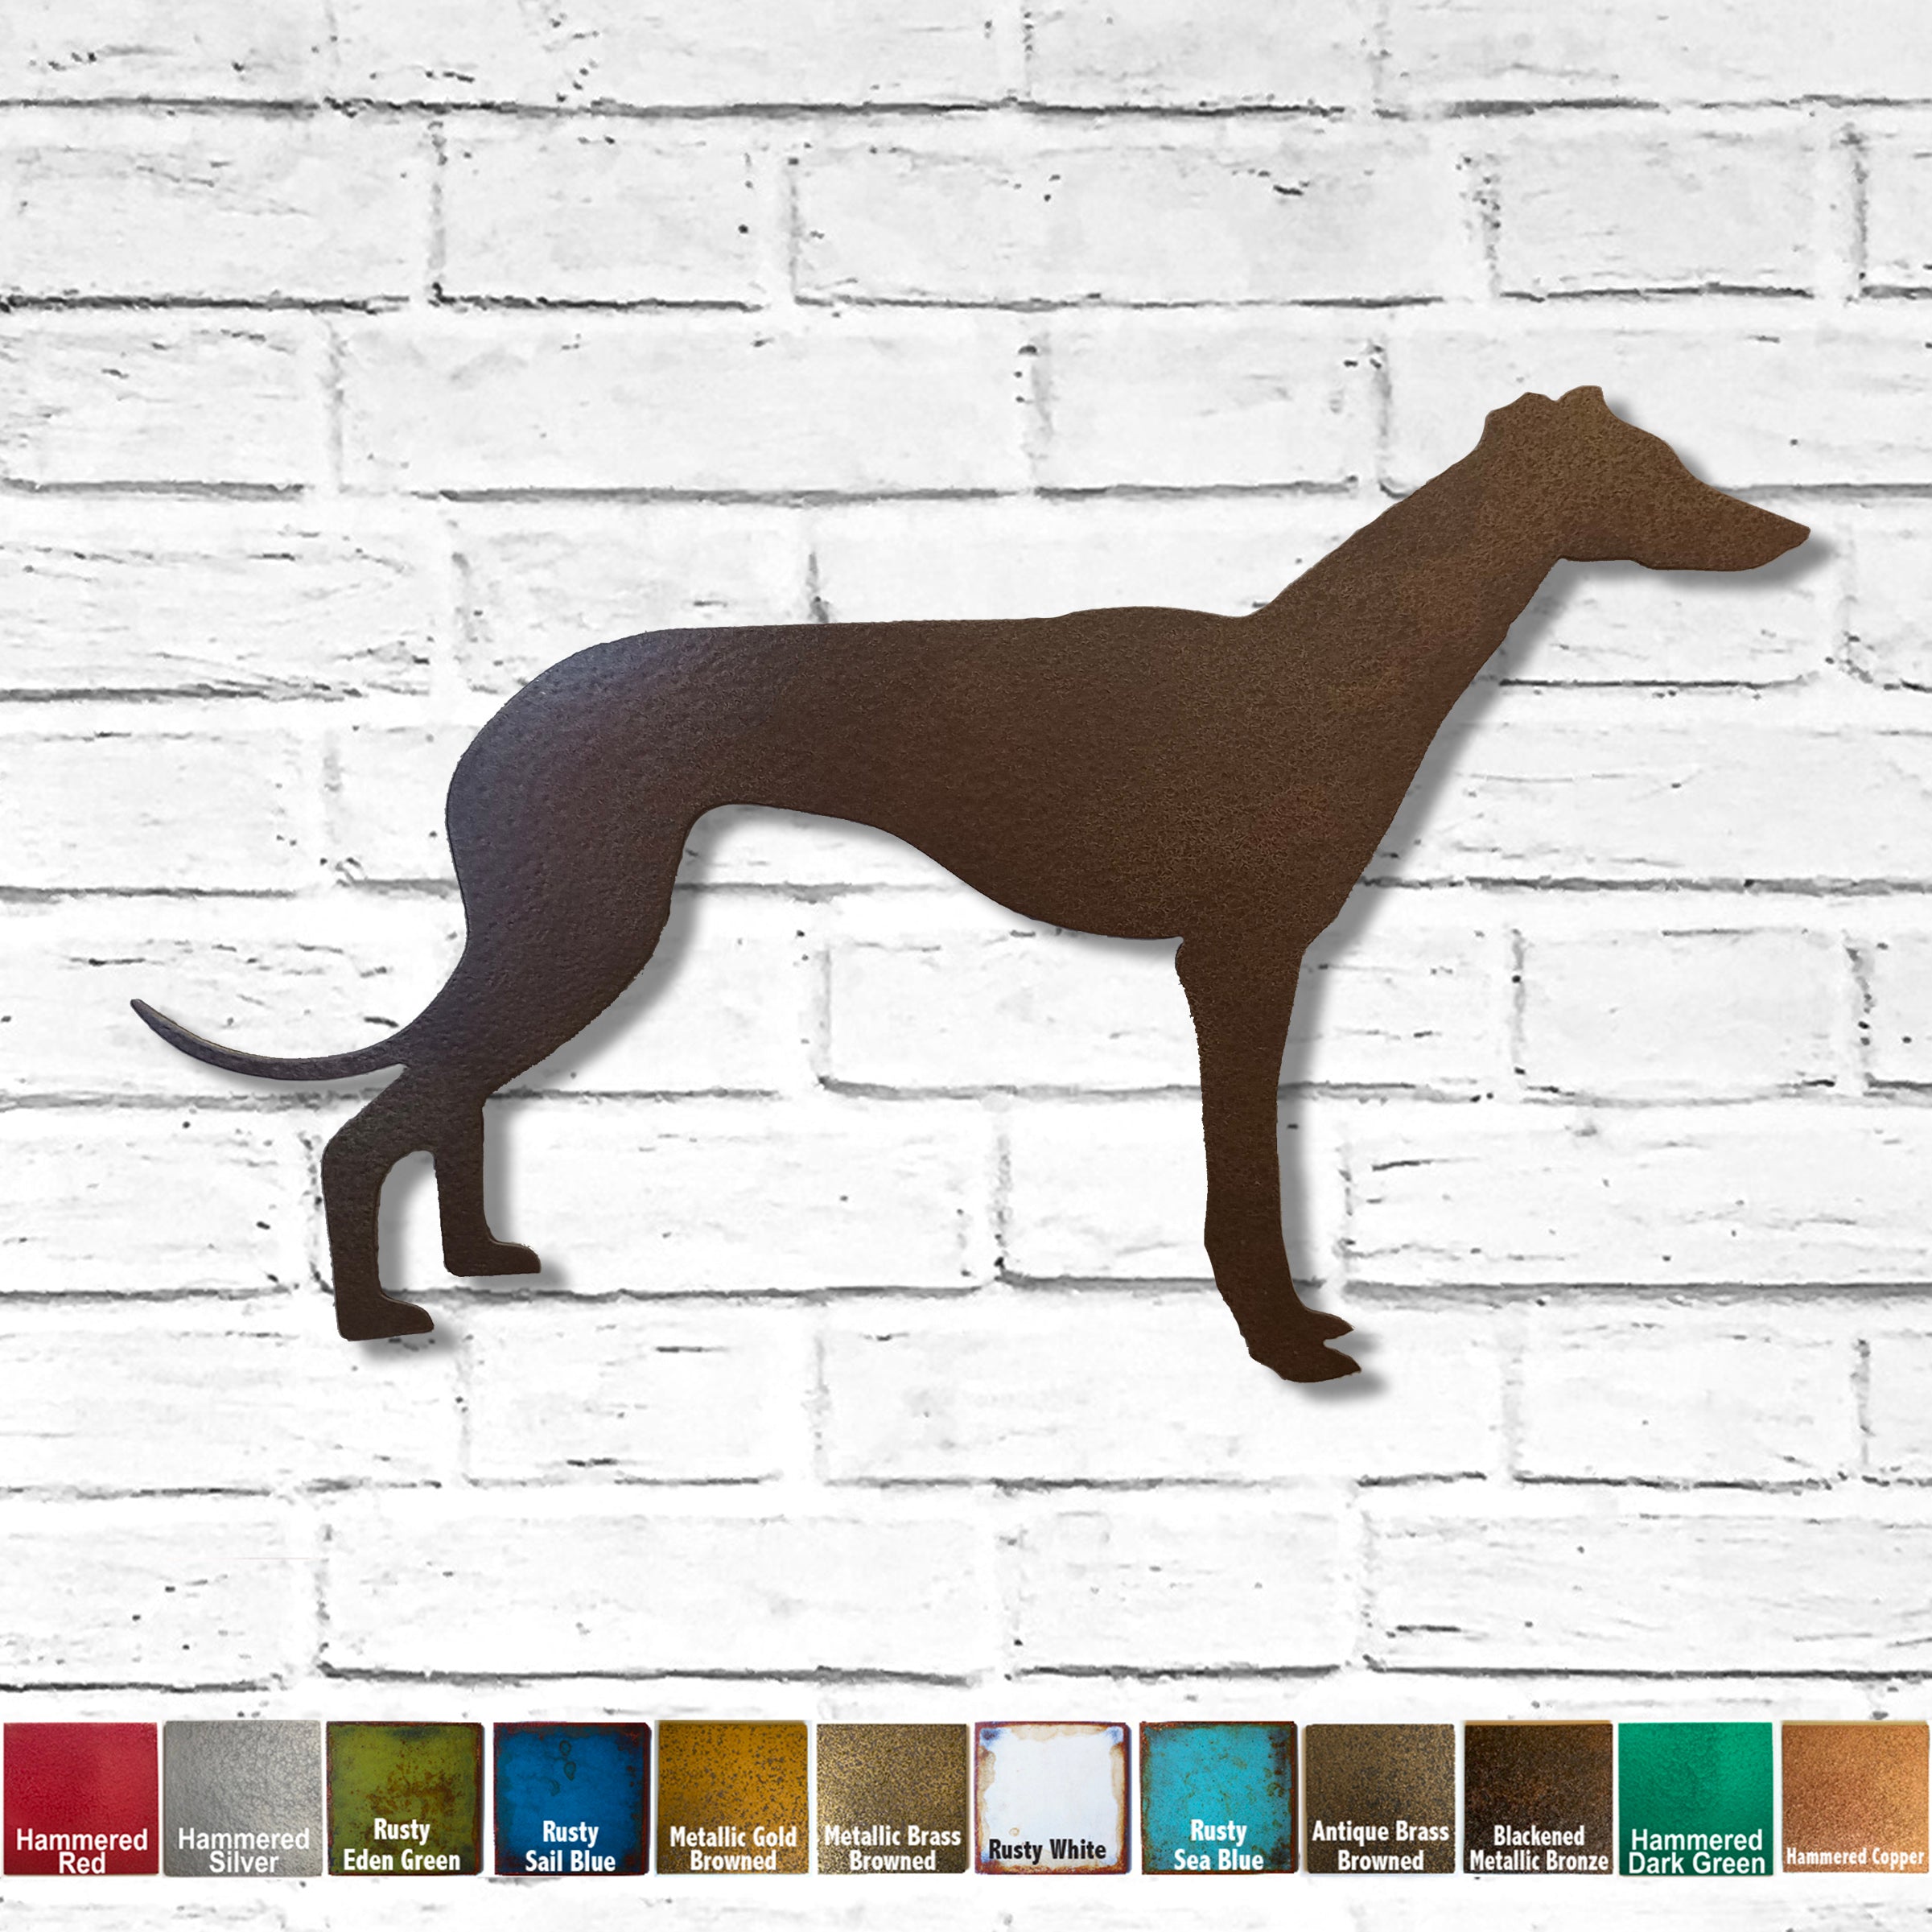 dark red greyhound